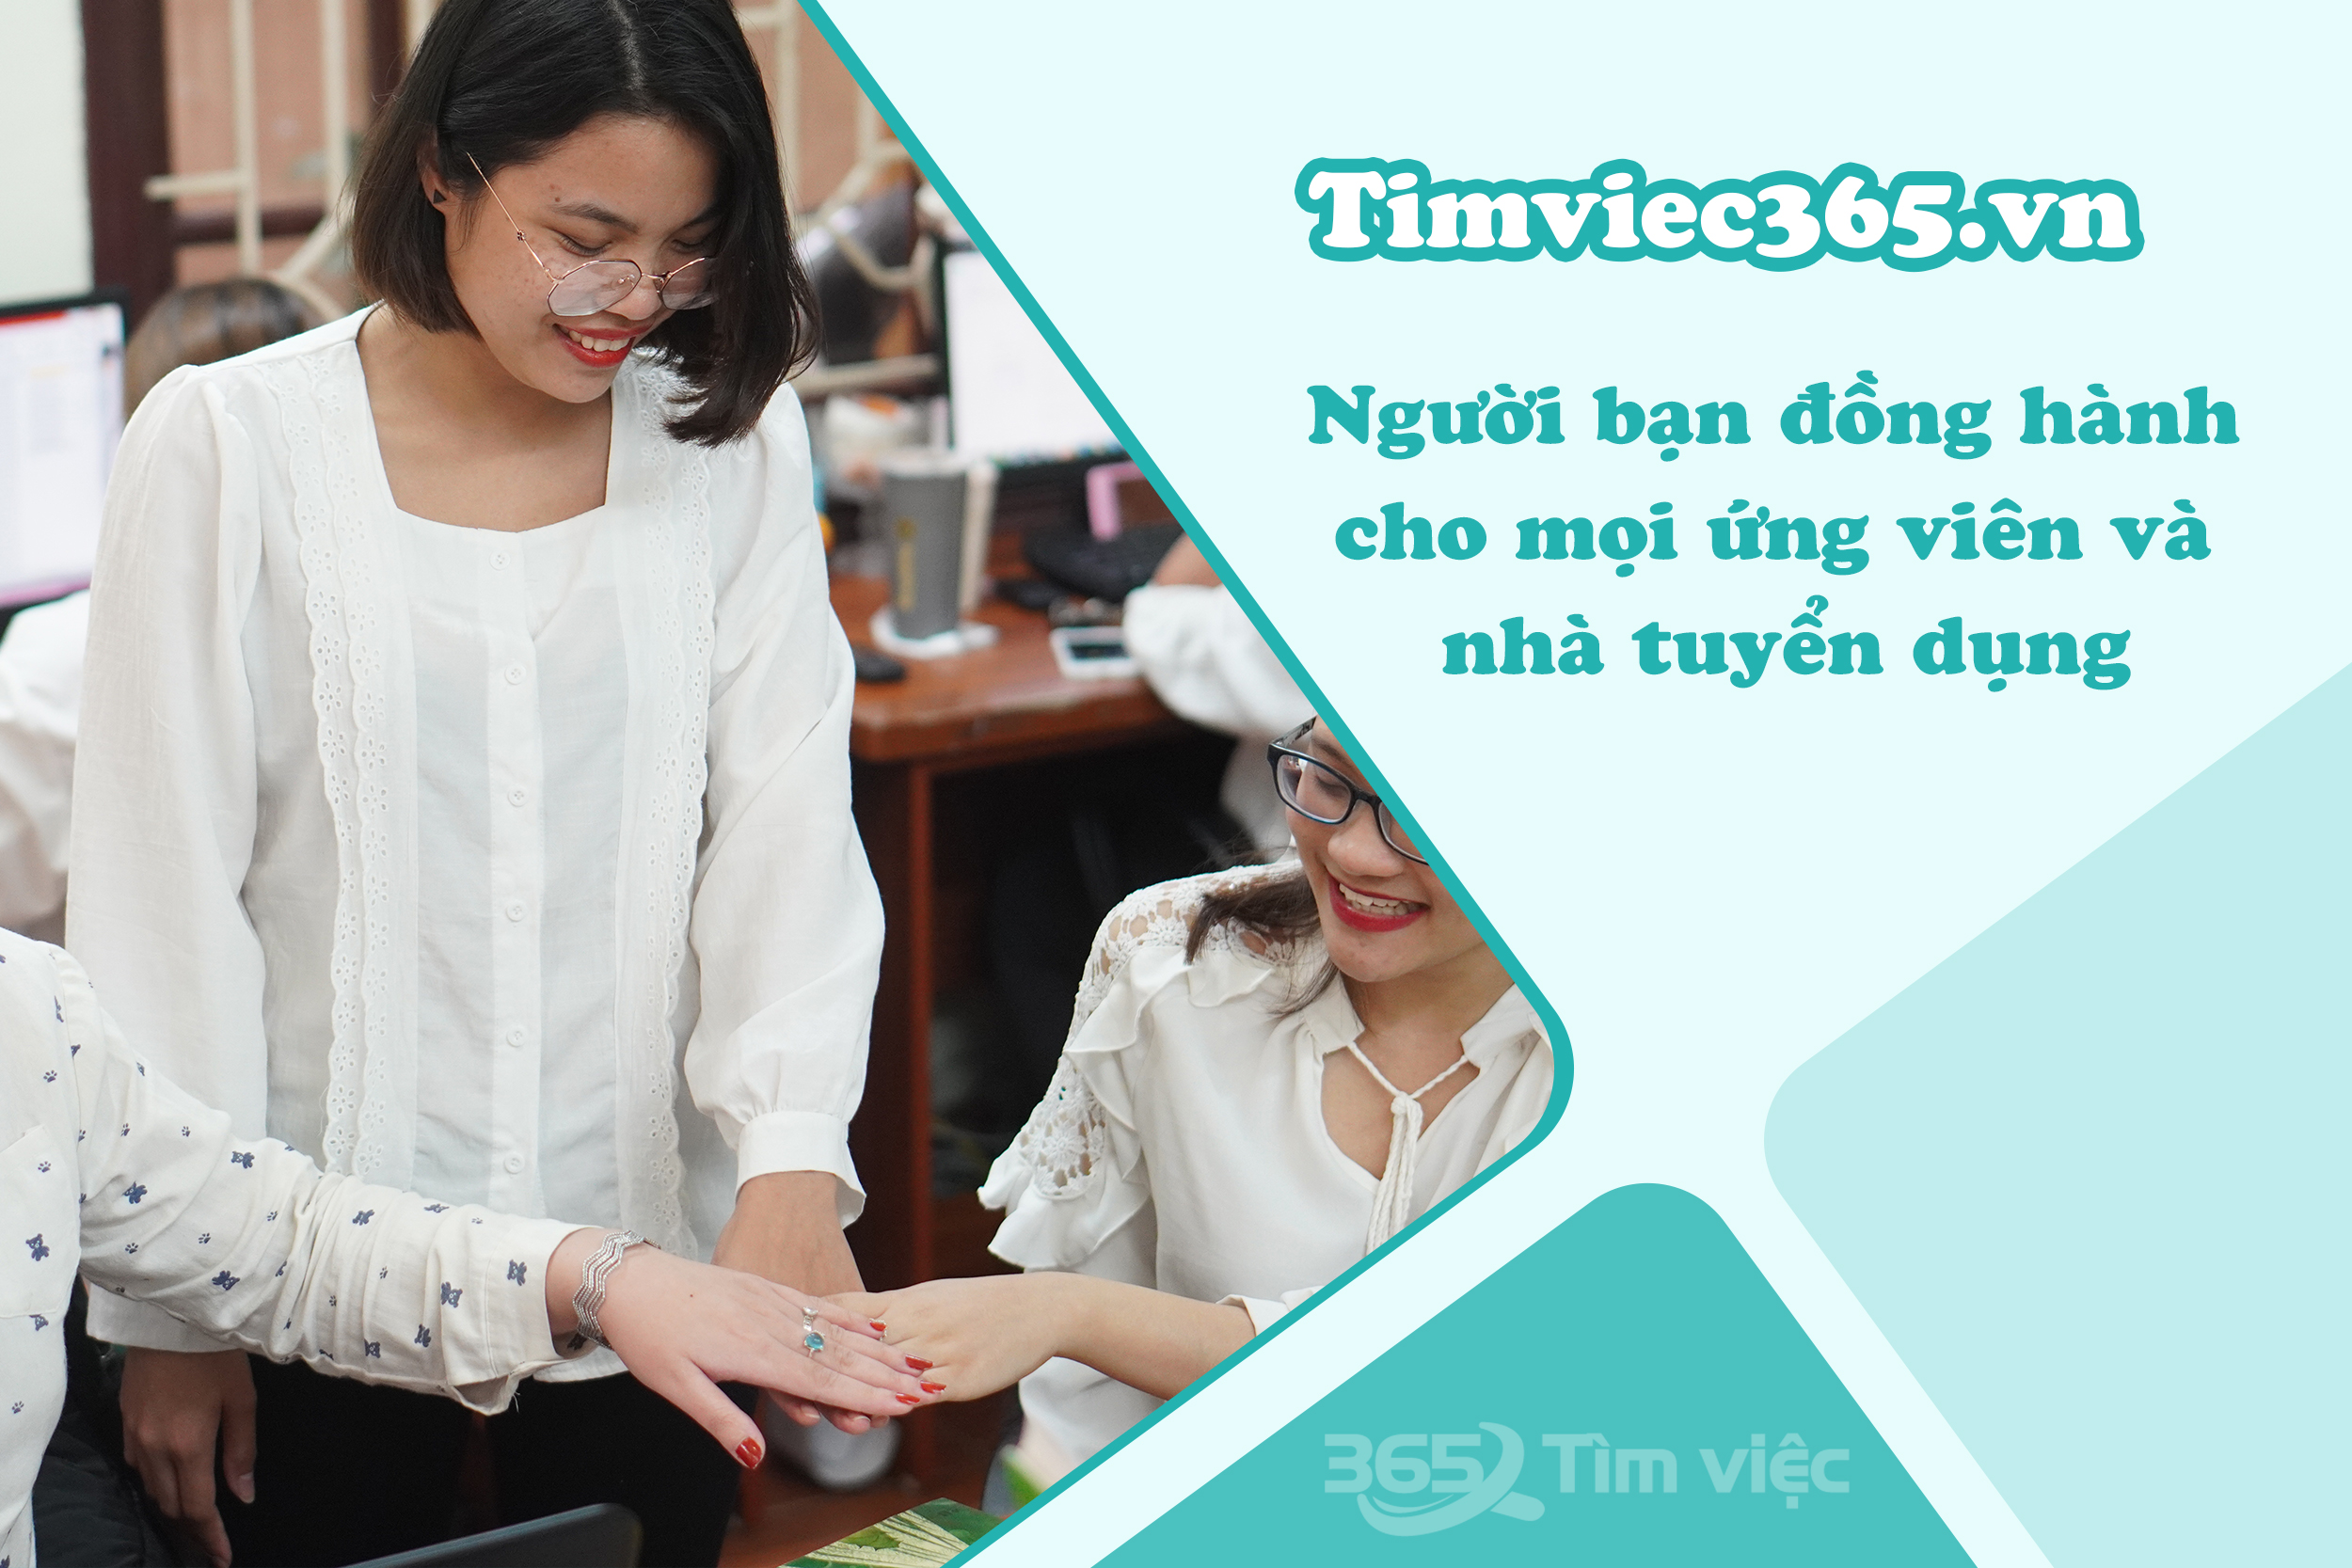 Timviec365.vn  - cầu nối đưa bạn tiến xa hơn trong hành trình chinh phục cơ hội việc làm Điện – Điện tử tại Lào Cai